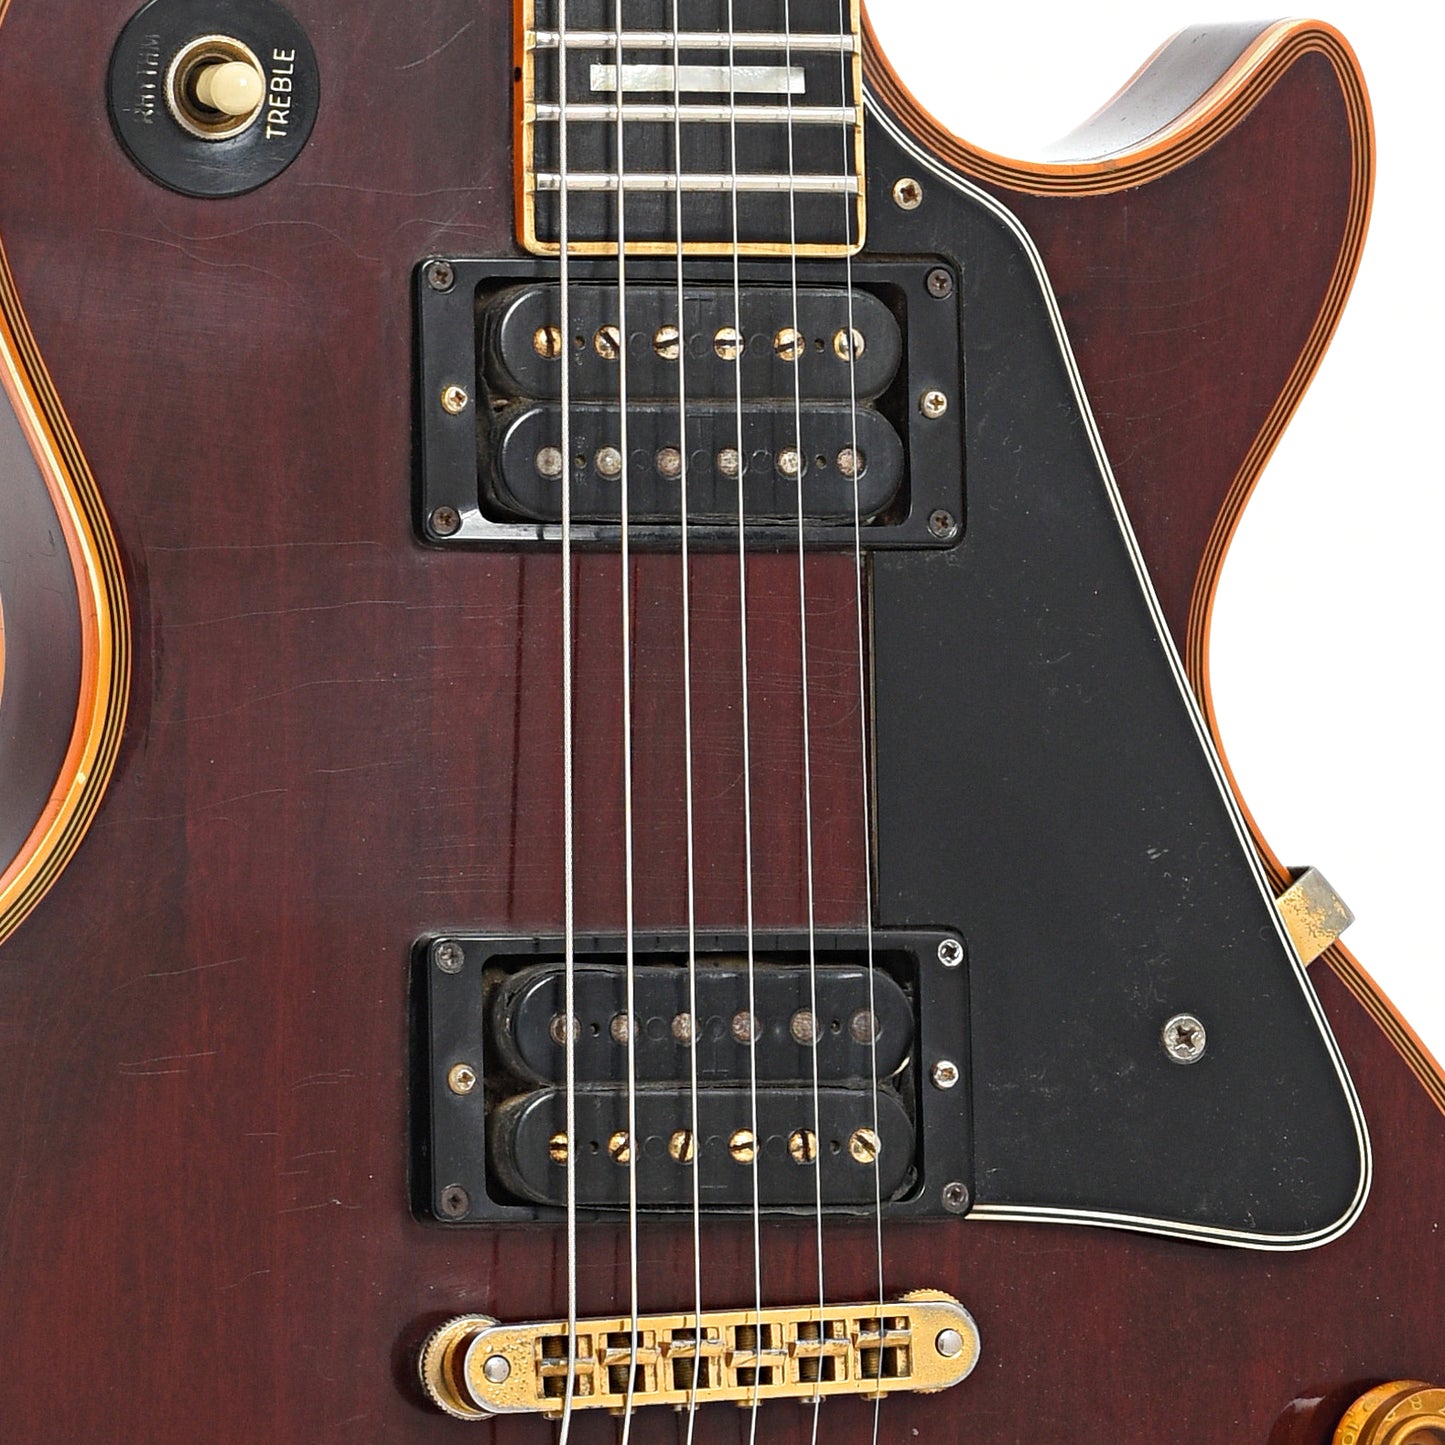 Pickups of Gibson Les Paul Custom Electric Guitar (1977)